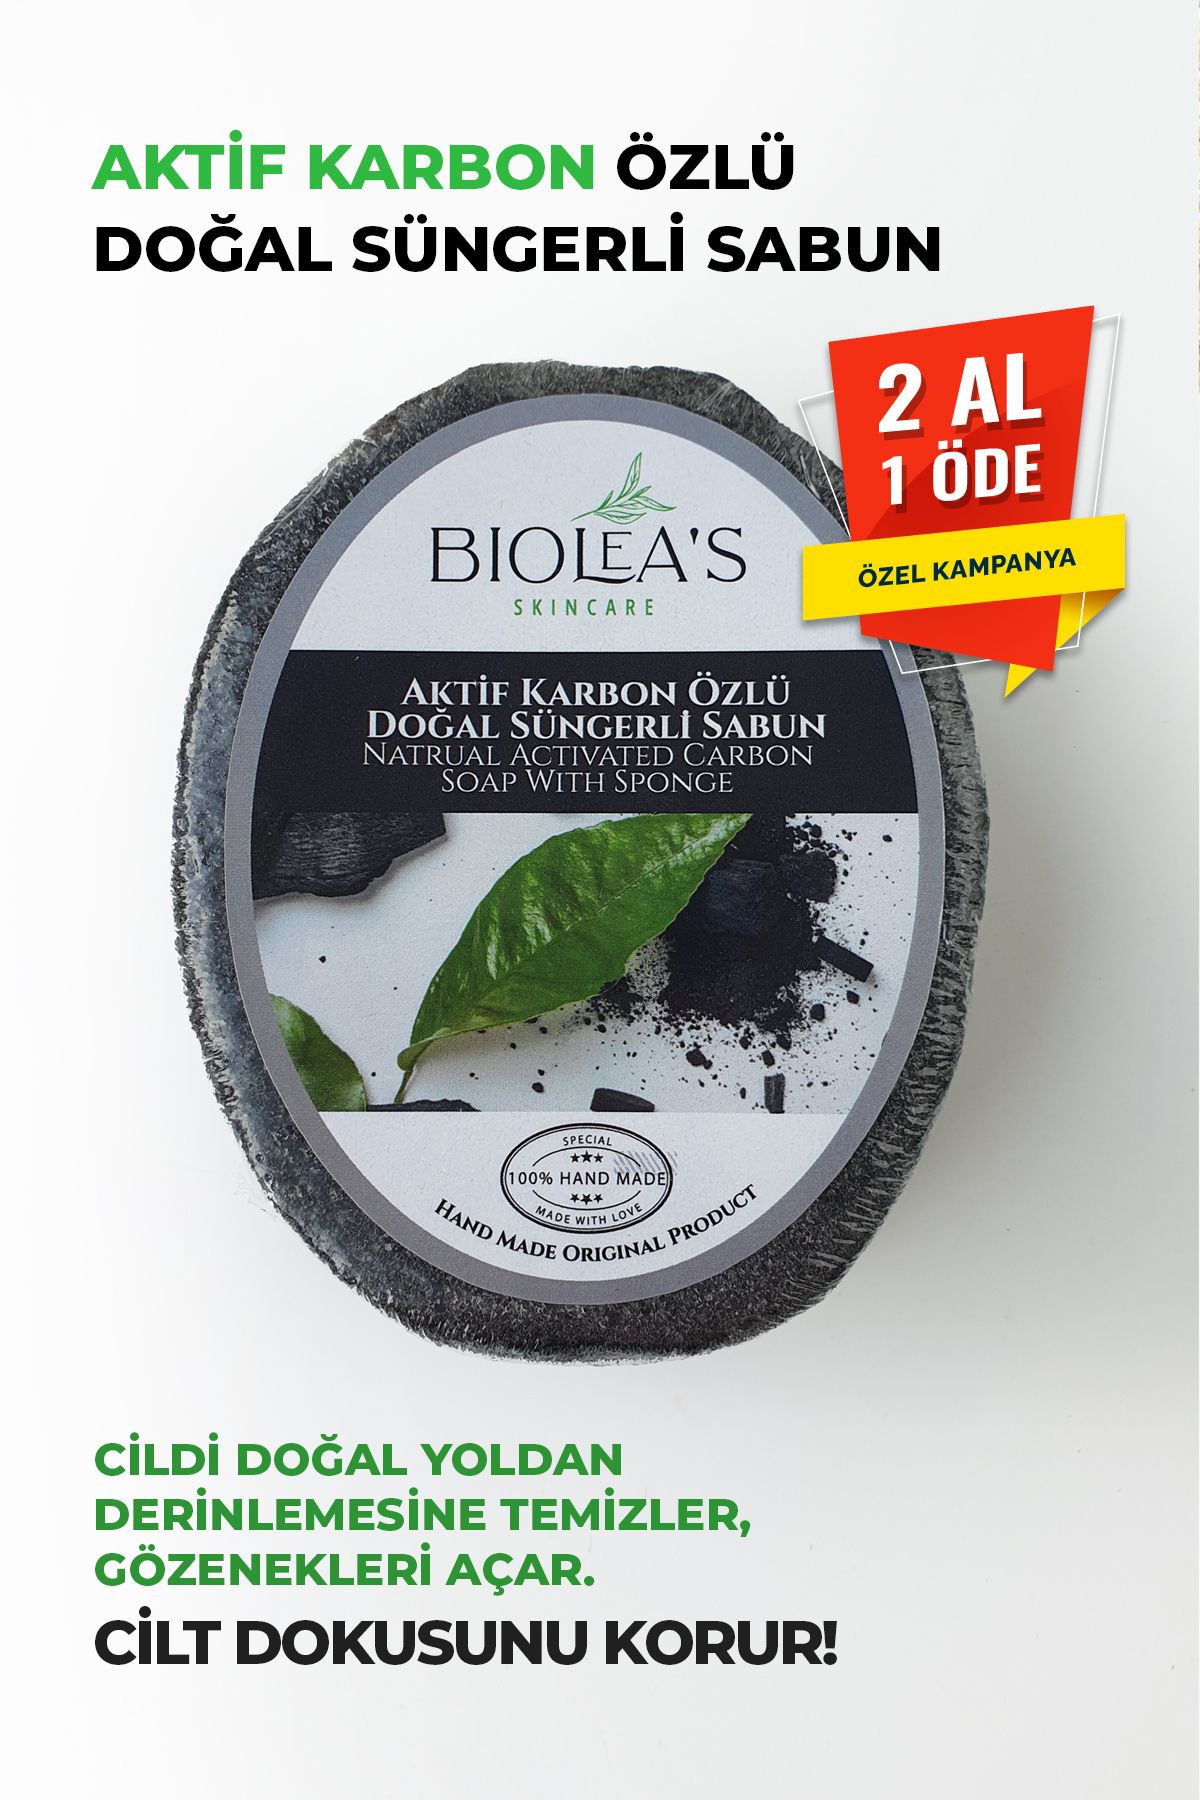 Biolea's skincare Aktif Karbon Özlü Doğal Süngerli Sabun 130 gr